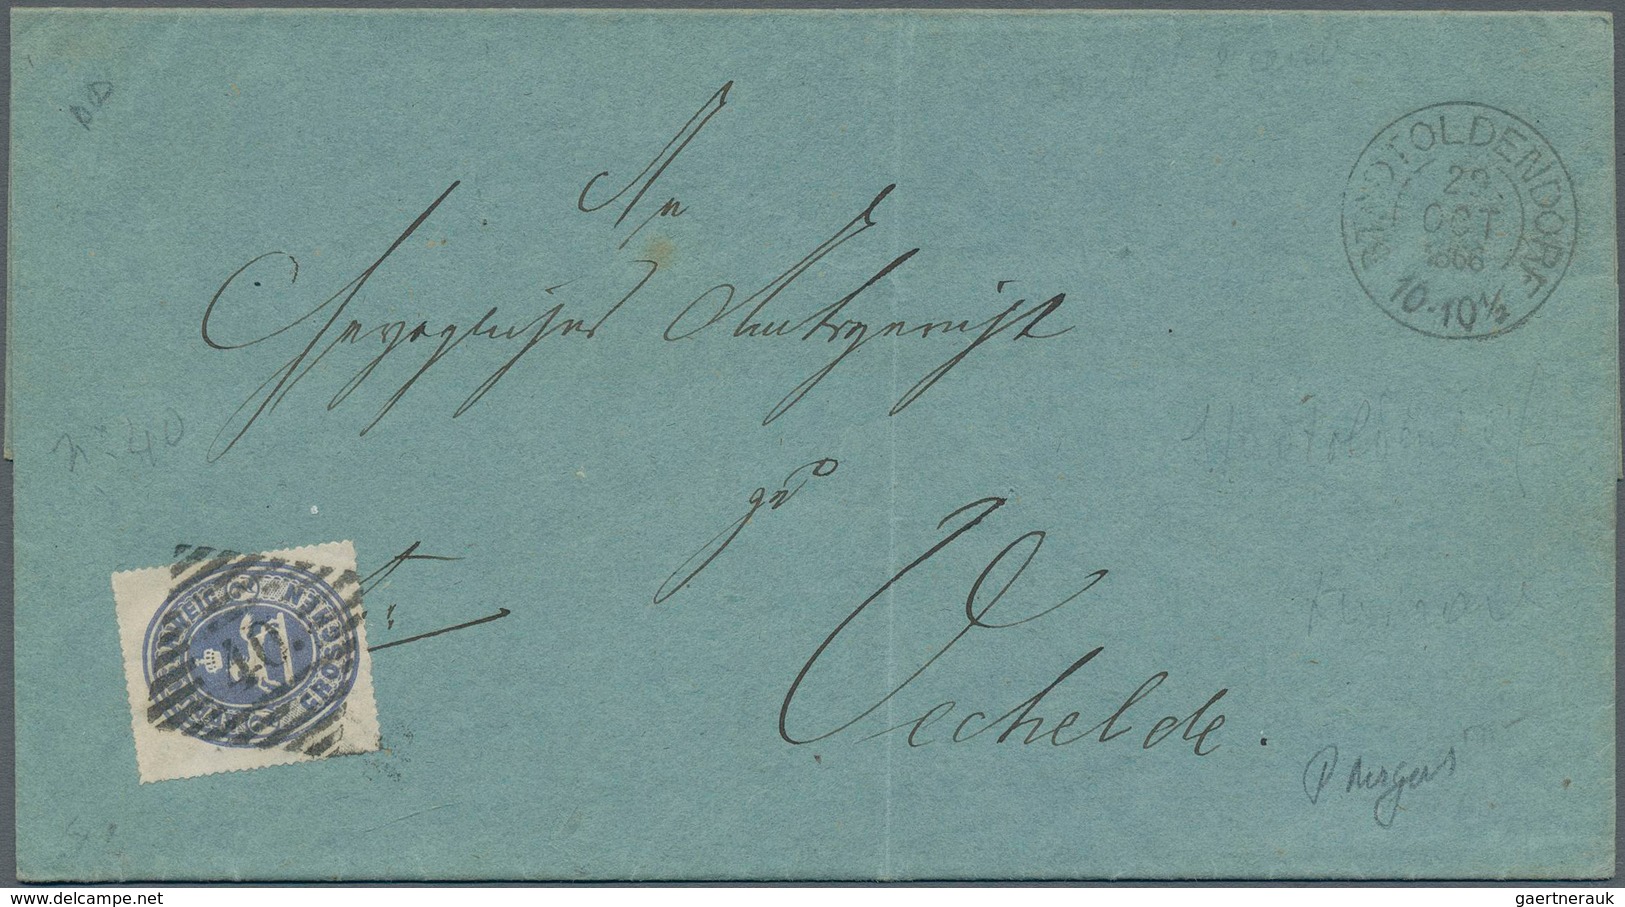 Braunschweig - Marken Und Briefe: 1865, Ovalausgabe 2 Gr. Blau Auf Faltbrief Von "STADTOLDENDORF 29. - Braunschweig